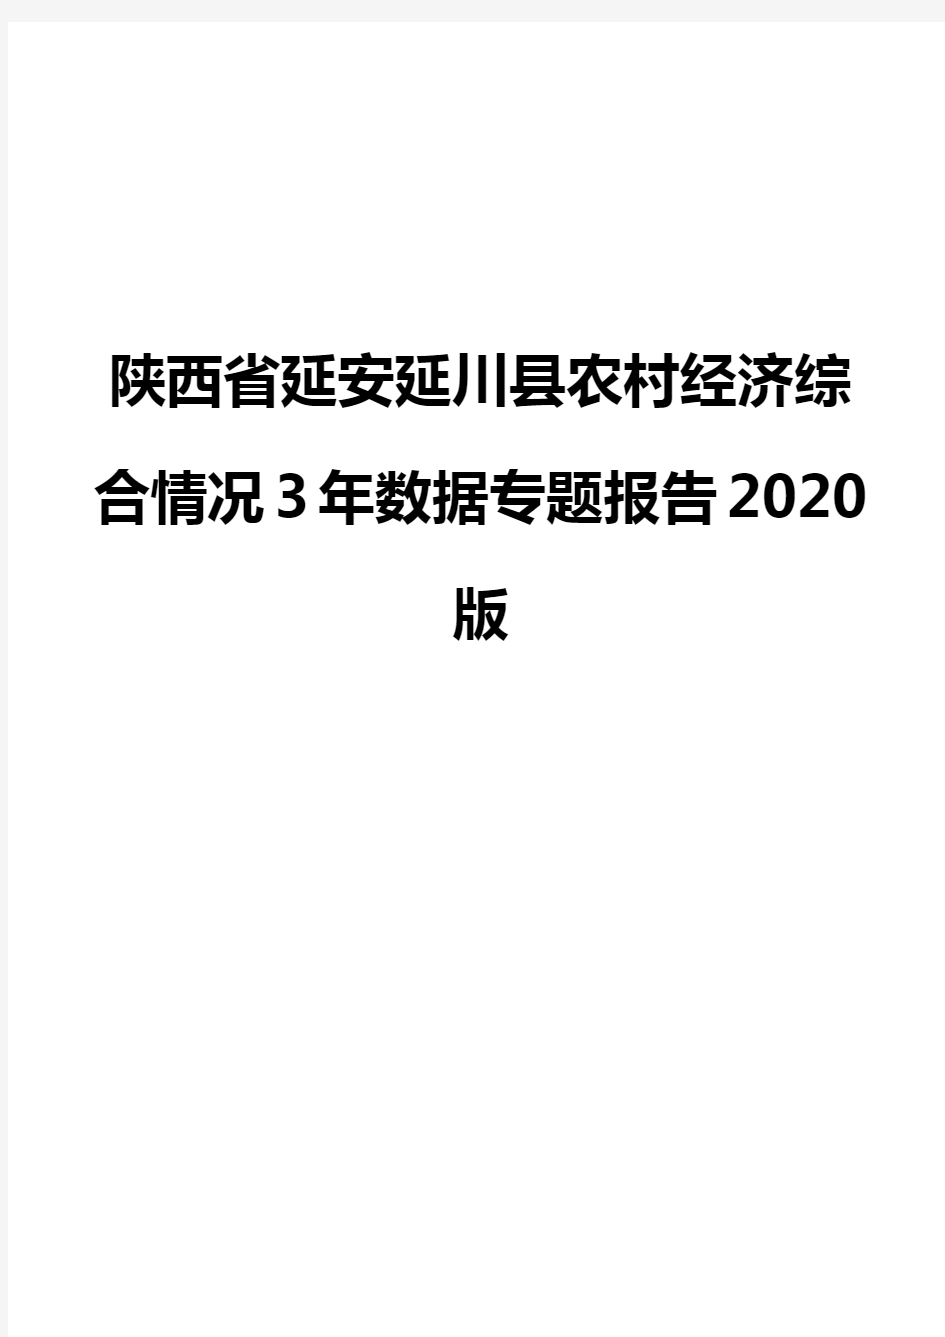 陕西省延安延川县农村经济综合情况3年数据专题报告2020版